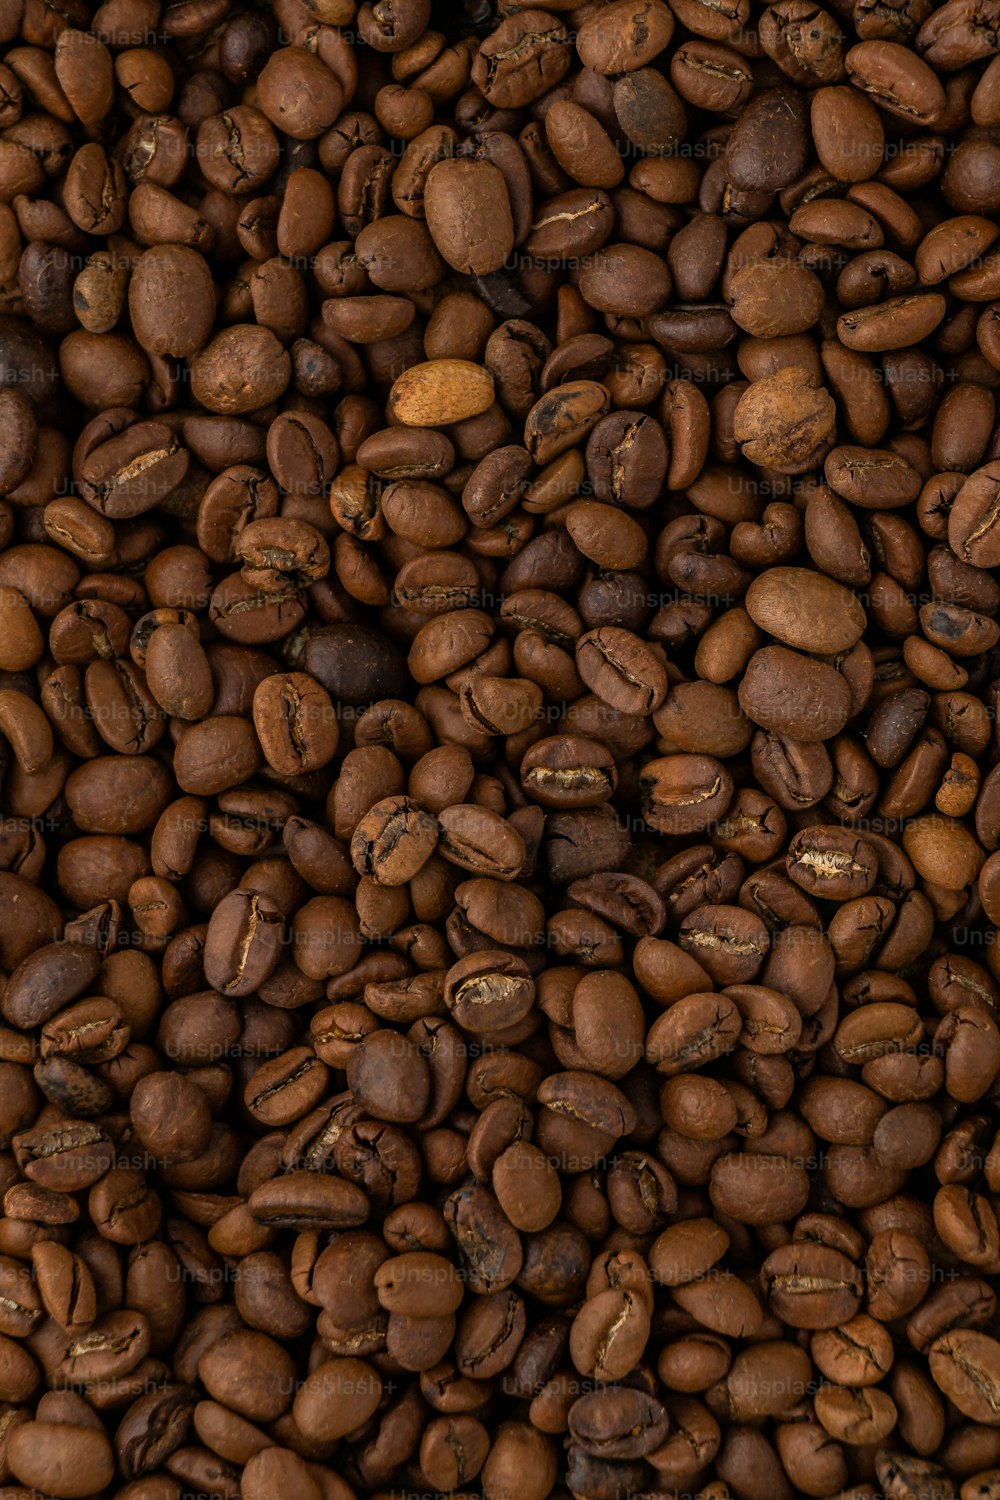 Un grand tas de grains de café est montré